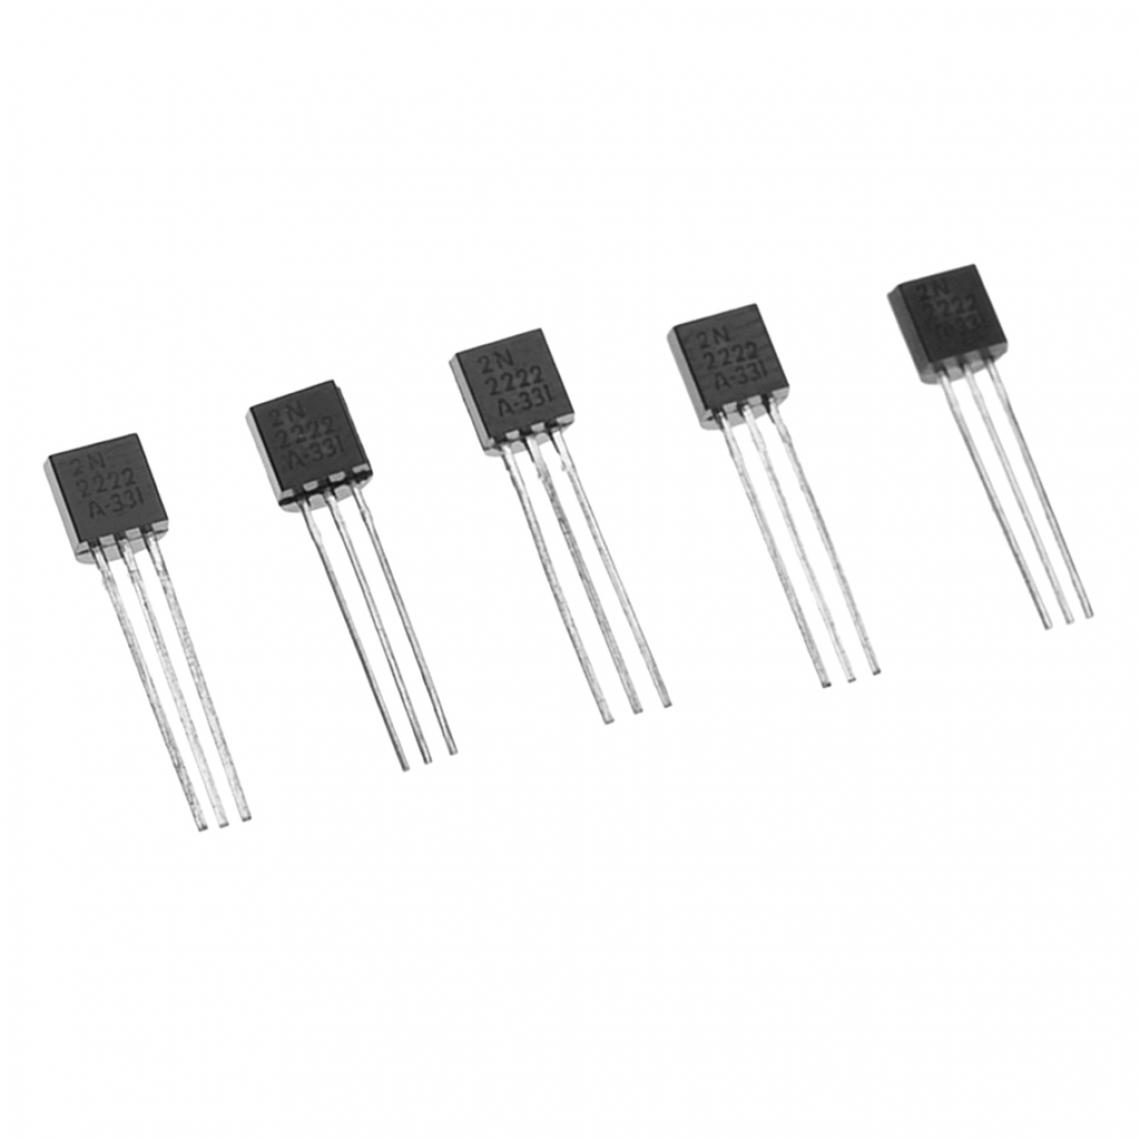 marque generique - Lot 100pcs 2N2222 à 92 NPN 40V Transistor 0.8A - Appareils de mesure